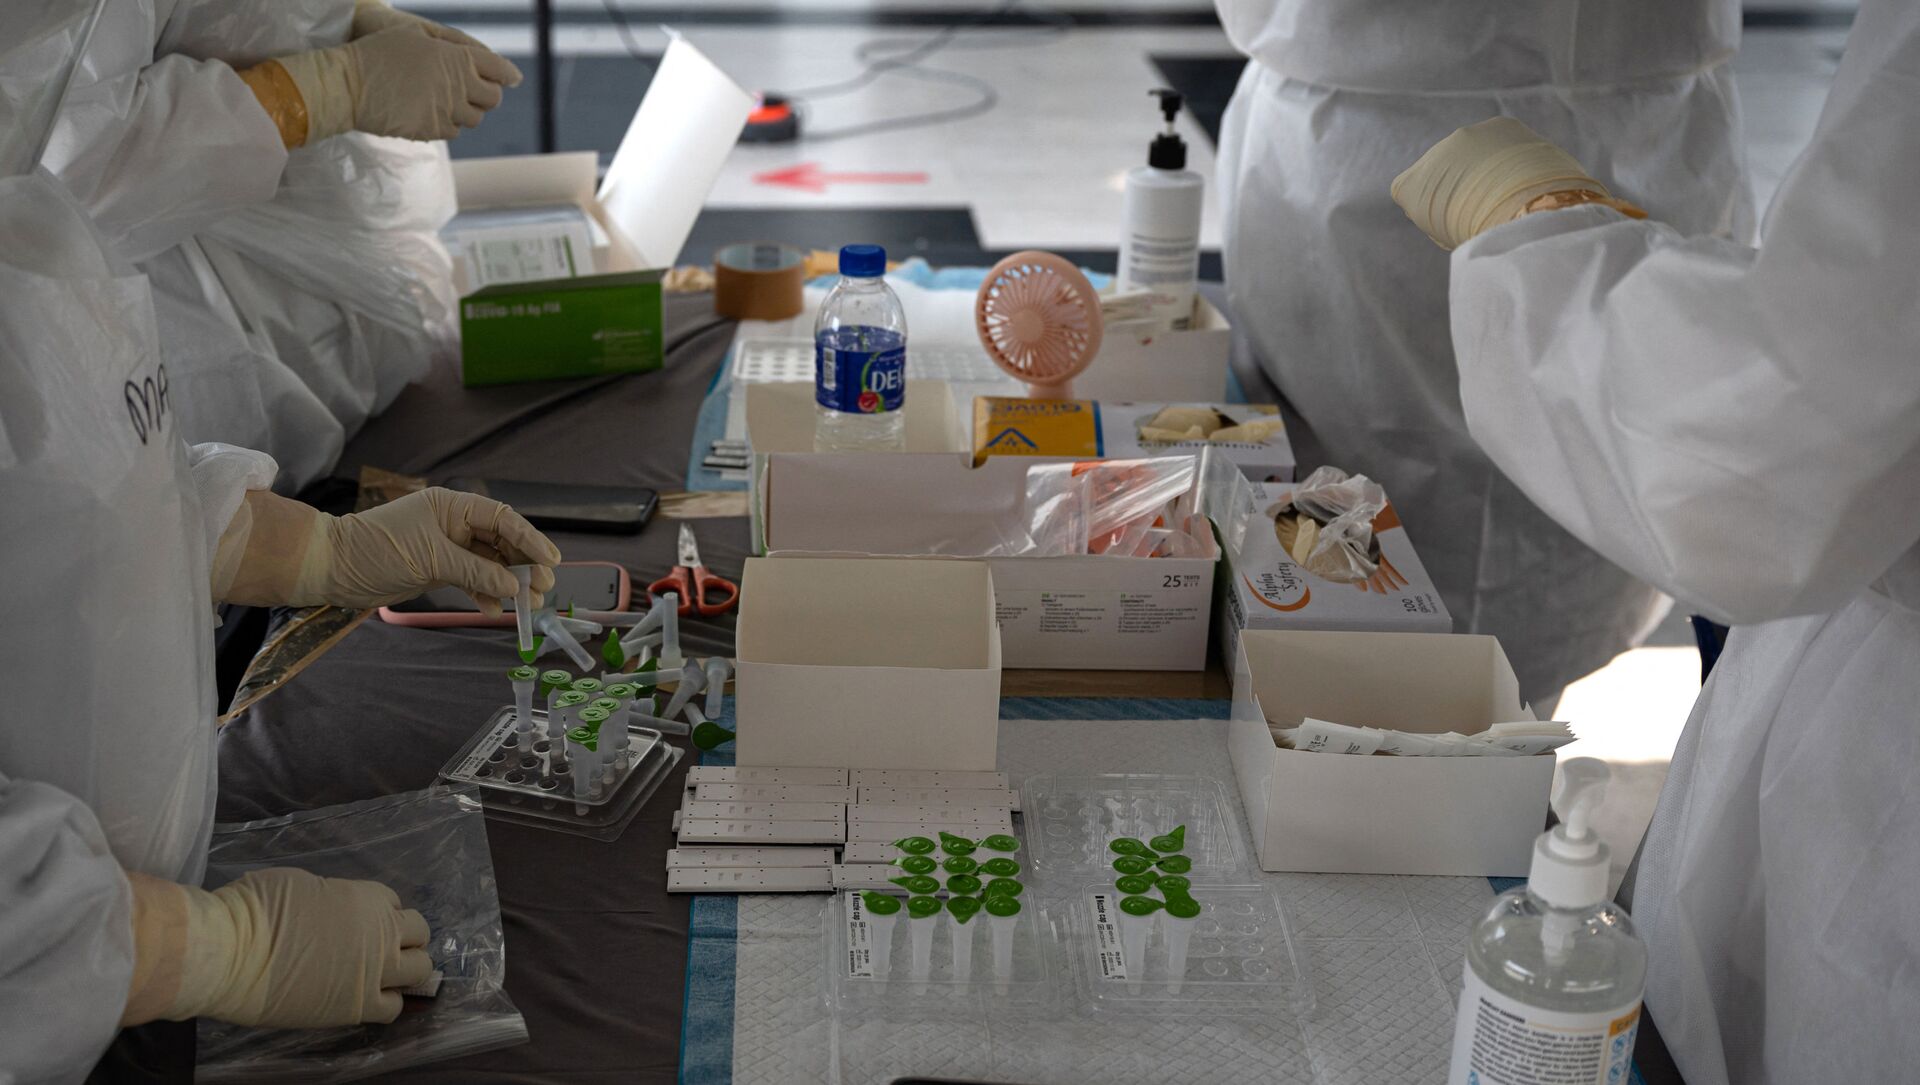 Медицинский персонал в защитных костюмах готовит наборы для тестирования на полигоне для тестирования на коронавирус Covid-19 в Шах-Аламе, на окраине Куала-Лумпура - Sputnik Аҧсны, 1920, 17.03.2021